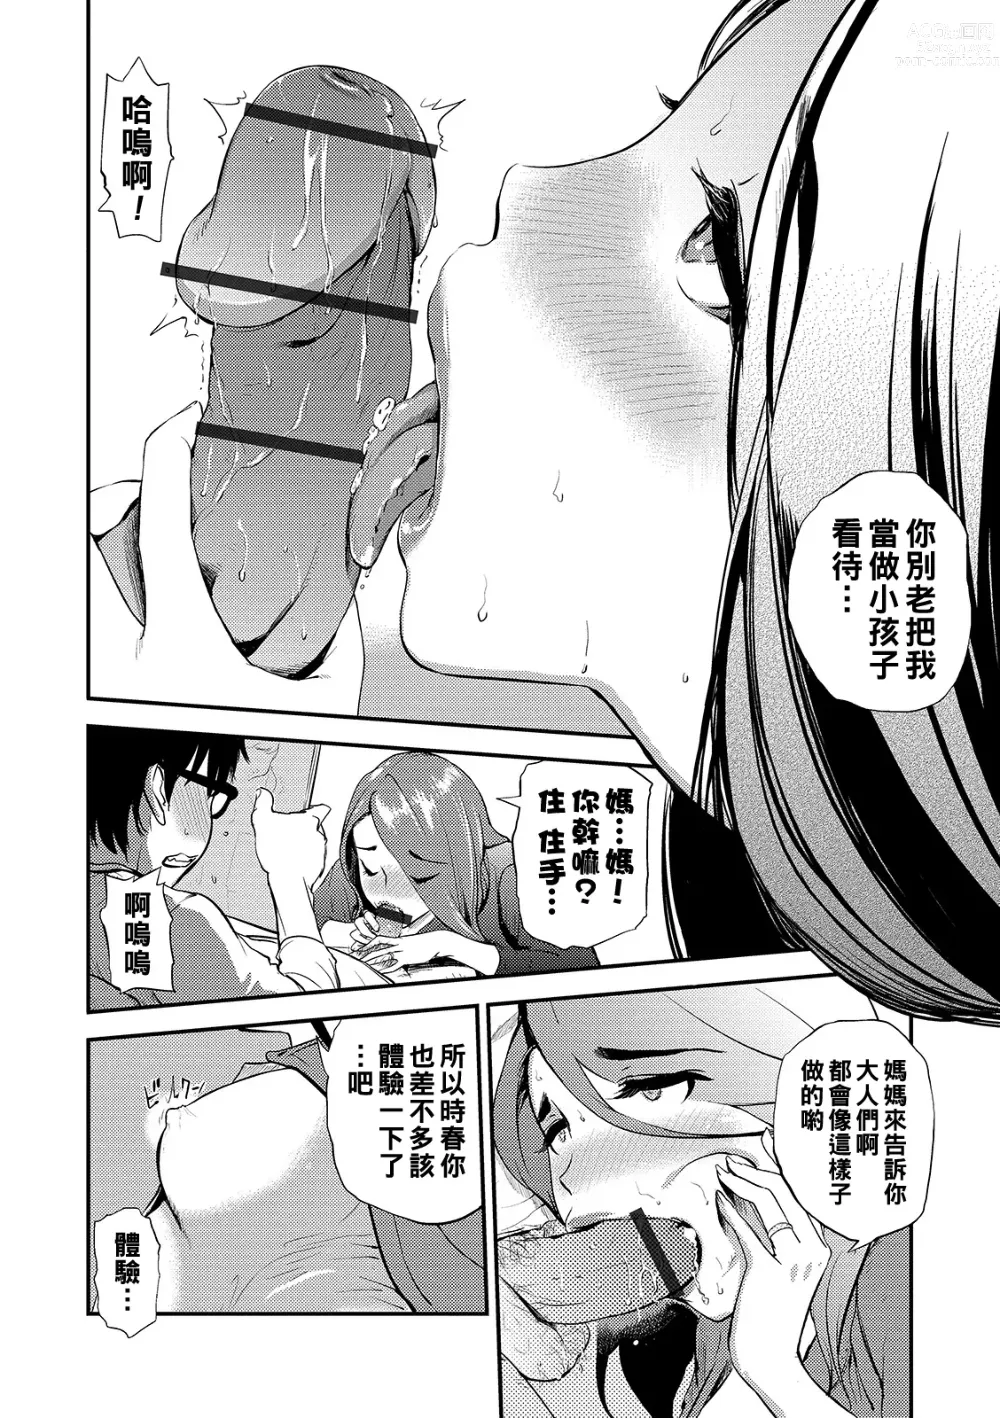 Page 4 of manga Mama no Kitsch Return